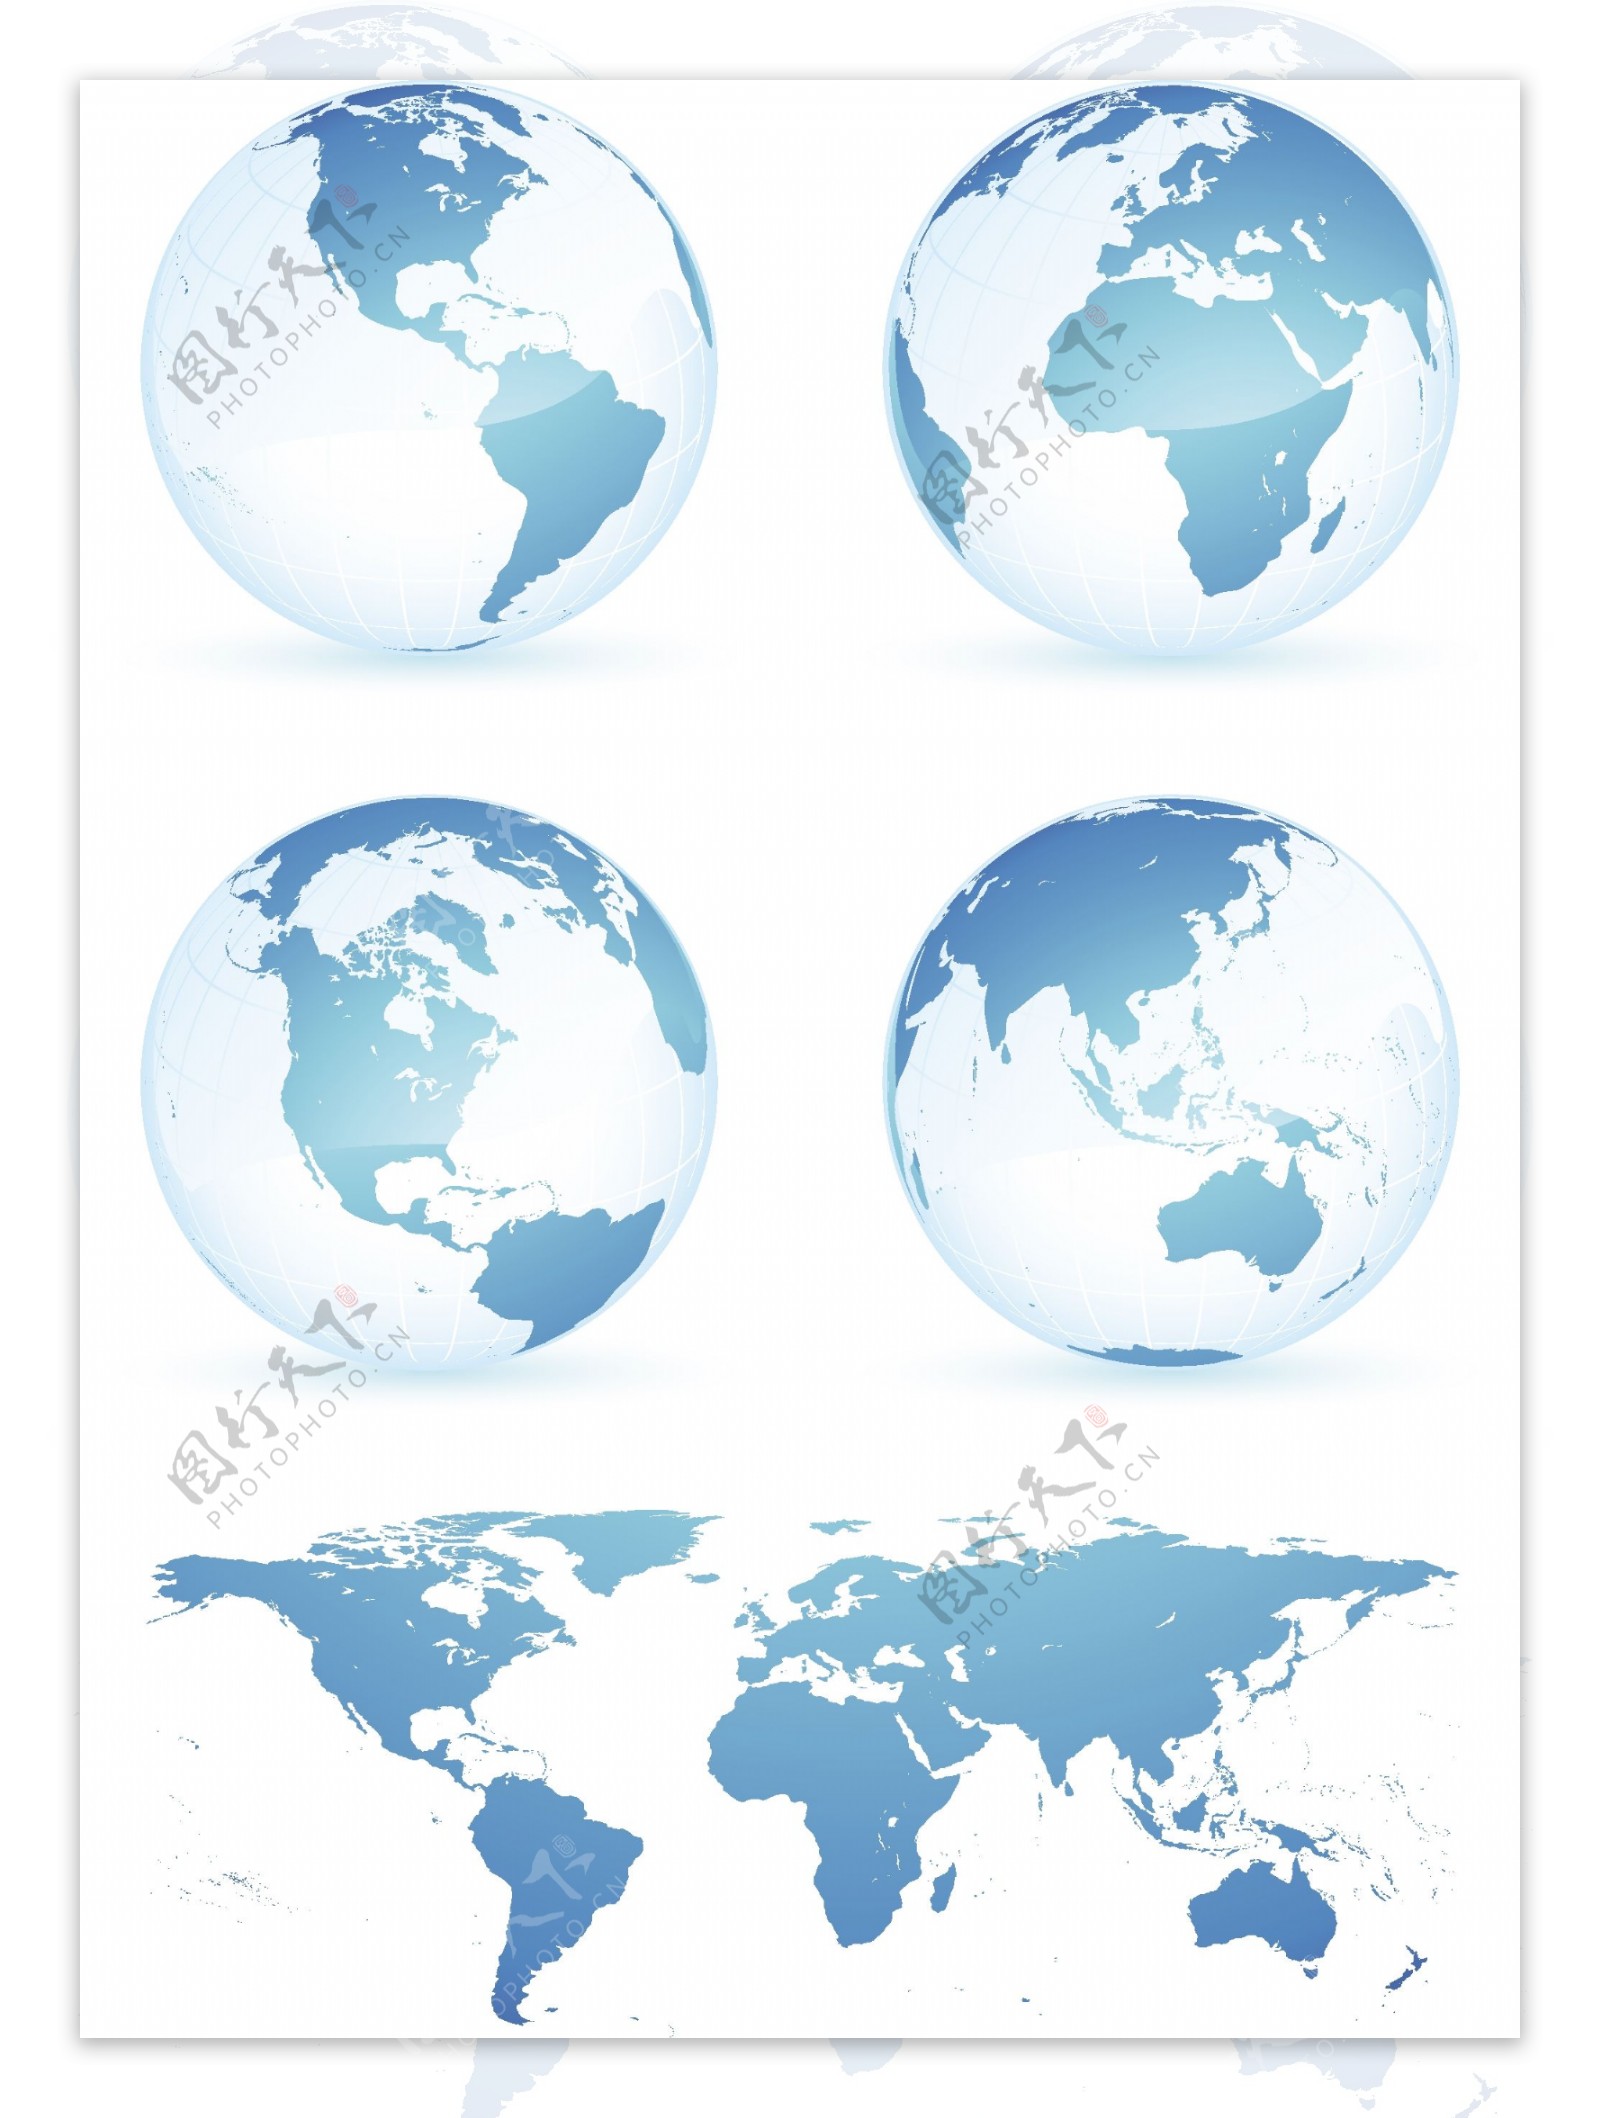 蓝色的地球和世界地图矢量素材